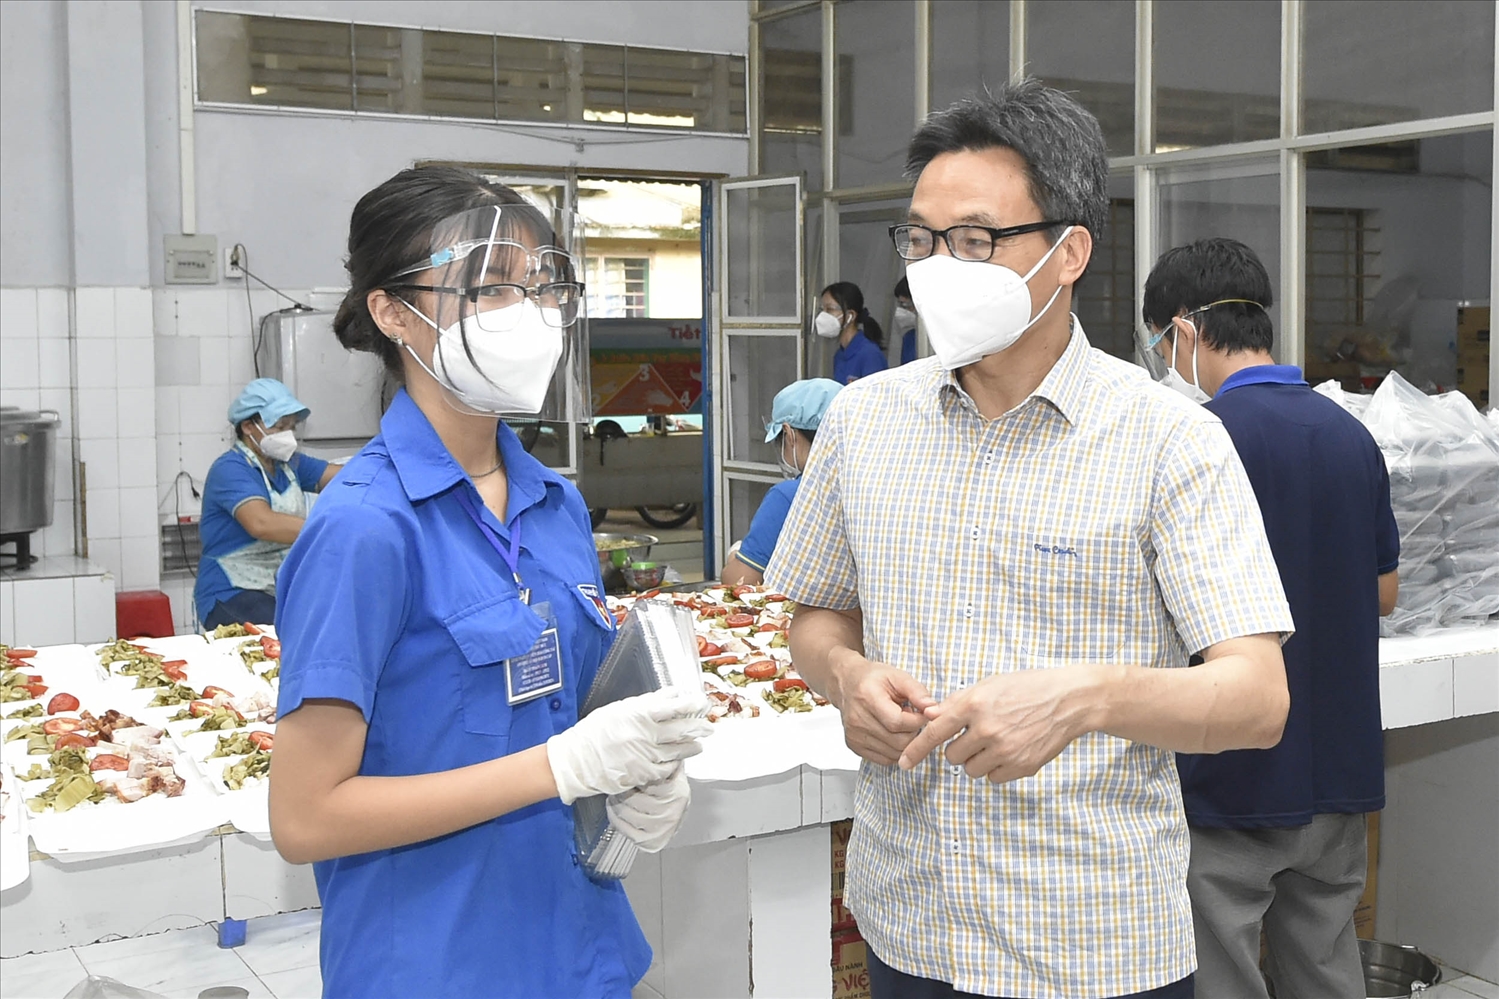 Phó Thủ tướng Vũ Đức Đam trò chuyện với một tình nguyện viên là học sinh lớp 11 tại bếp ăn ở Trường tiểu học Lương Thế Vinh (phường Bình Thọ, TP. Thủ Đức)